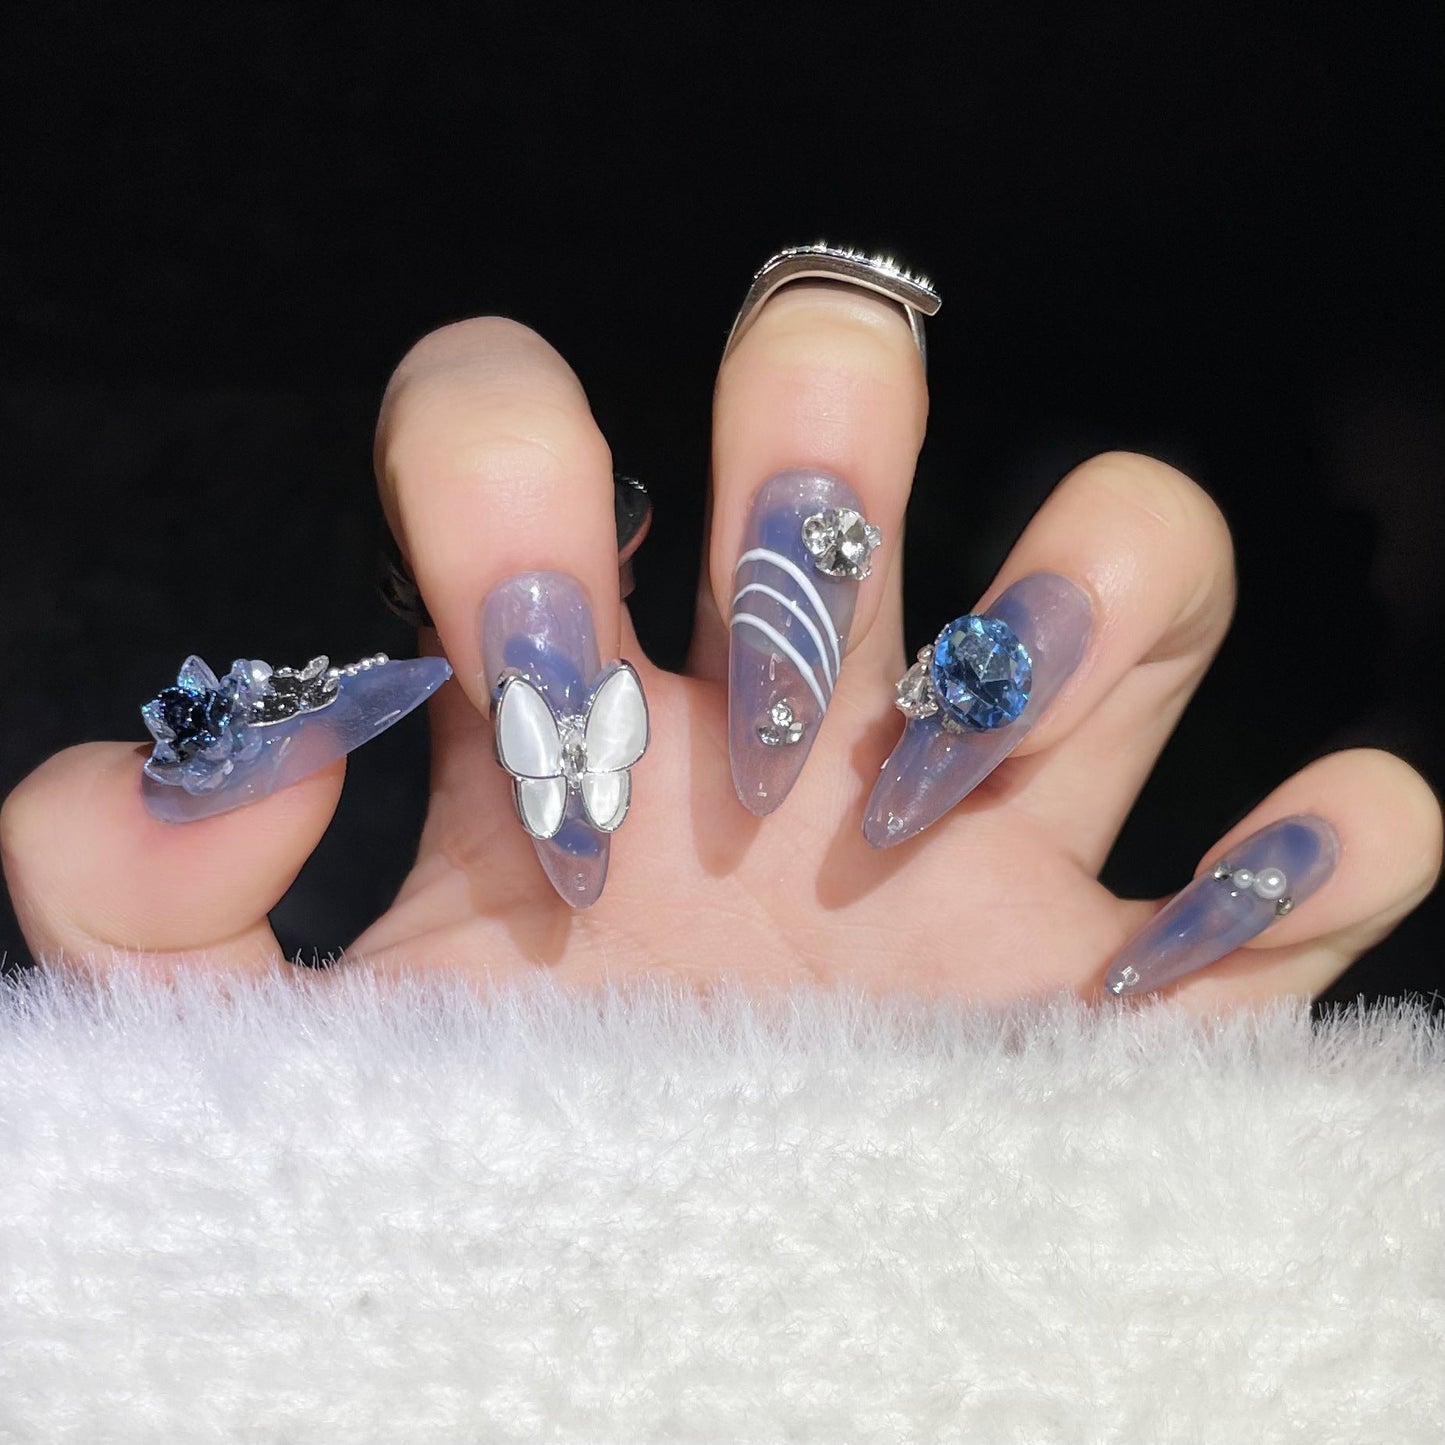 1316 Presse de style fleurs papillon bleu sur les ongles 100% faux ongles faits à la main bleu